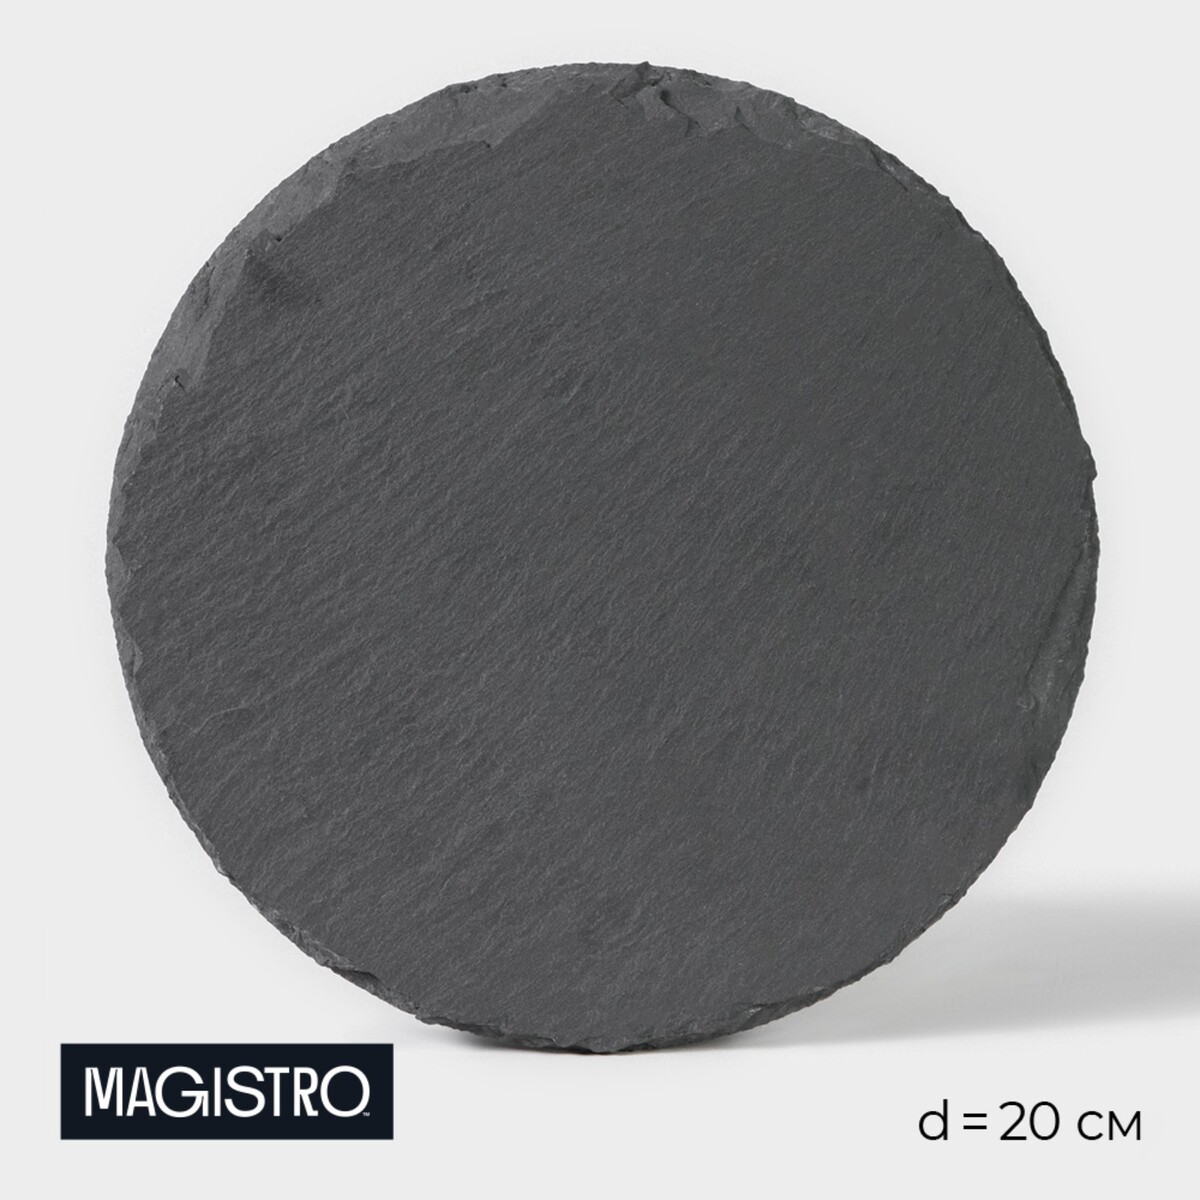 Доска для подачи из сланца magistro valley, d=20 см доска для подачи magistro valley из сланца 21×20 см в виде сердца